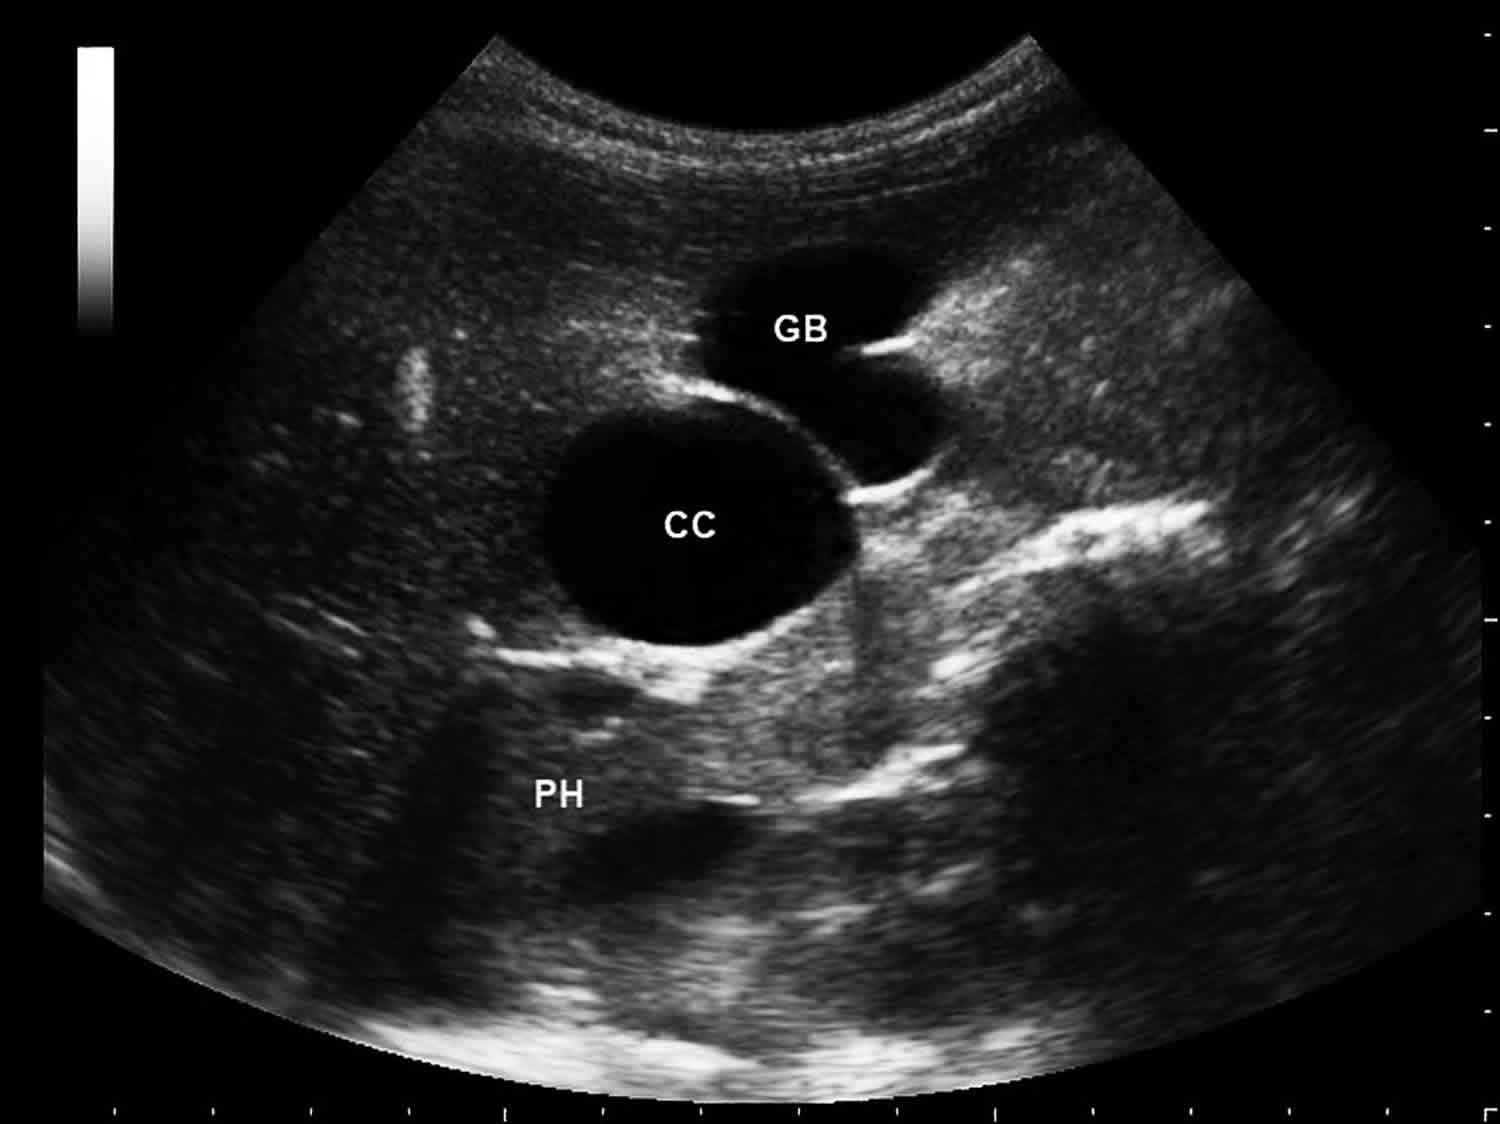 Gallbladder Wall Cyst Ultrasound